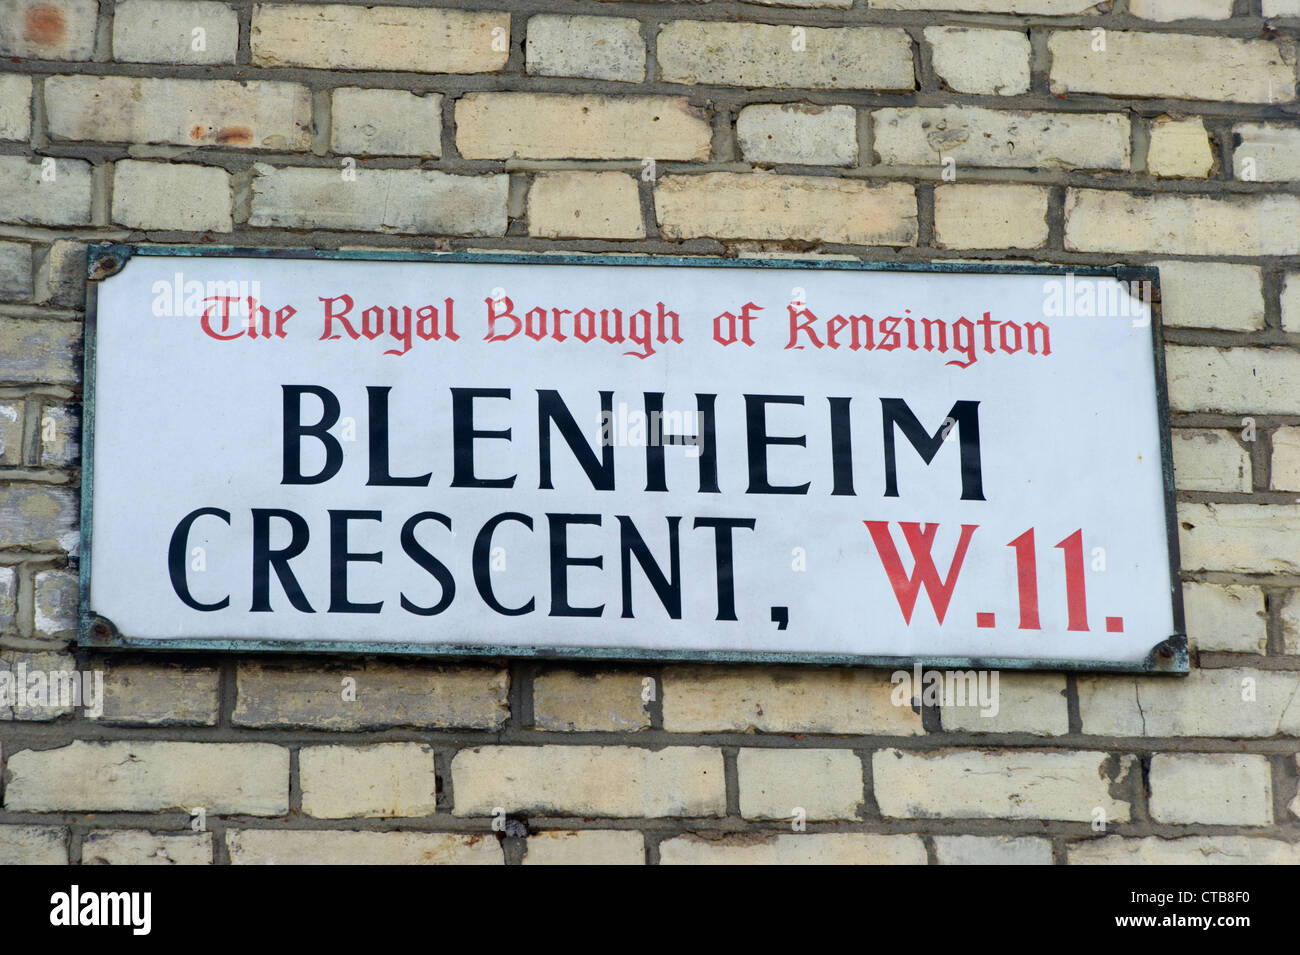 Blenheim Crescent, W.11 Stock Photo